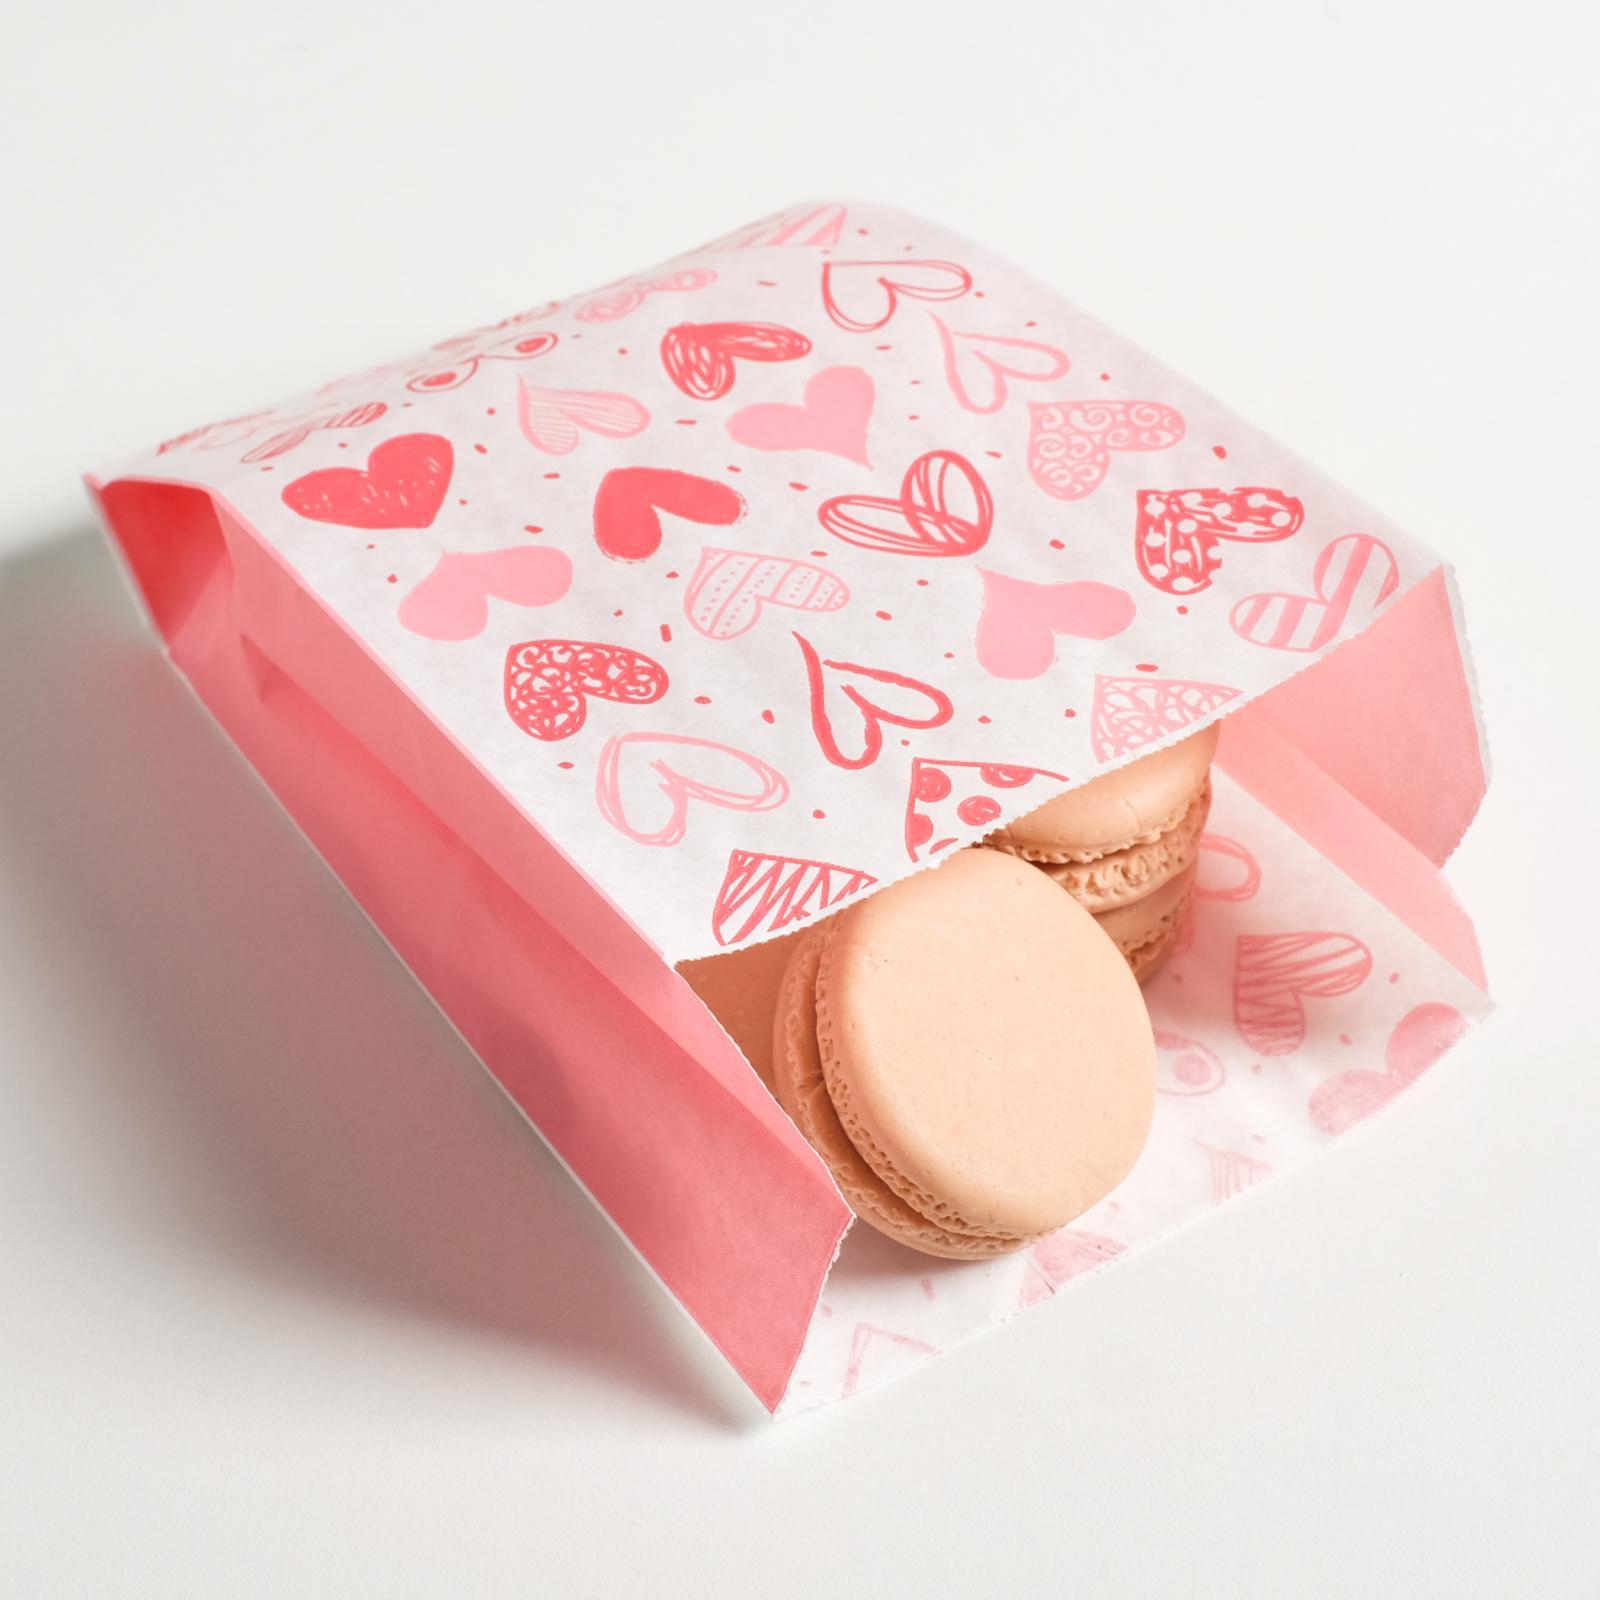 Купить пакеты для сладостей в розницу - интернет-магазин irhidey.ru